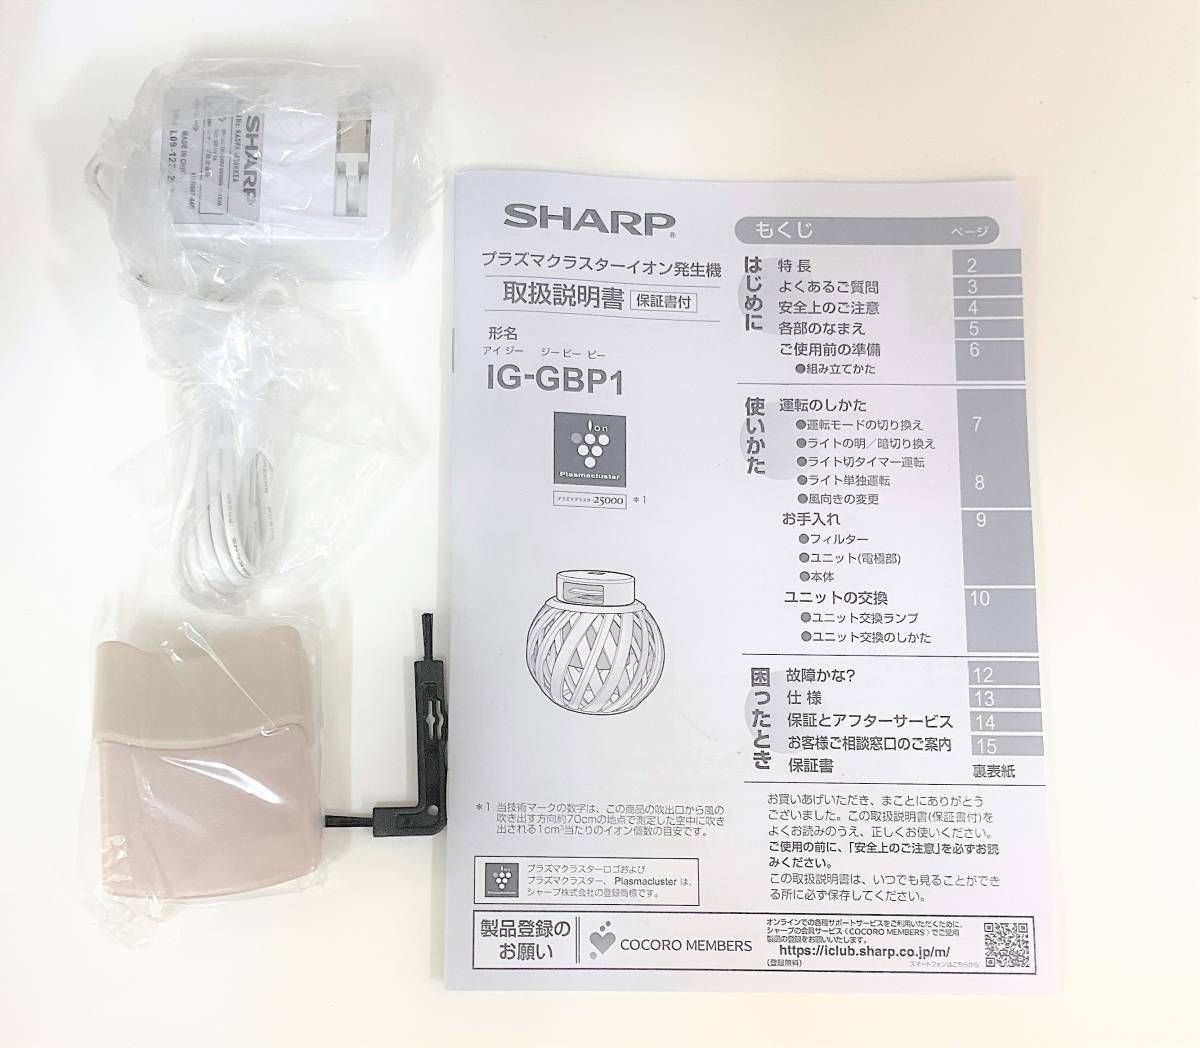 新品未使用☆シャープ プラズマクラスターイオン発生機 IG-GBP1-W ホワイト 高濃度プラズマクラスター25000_画像3